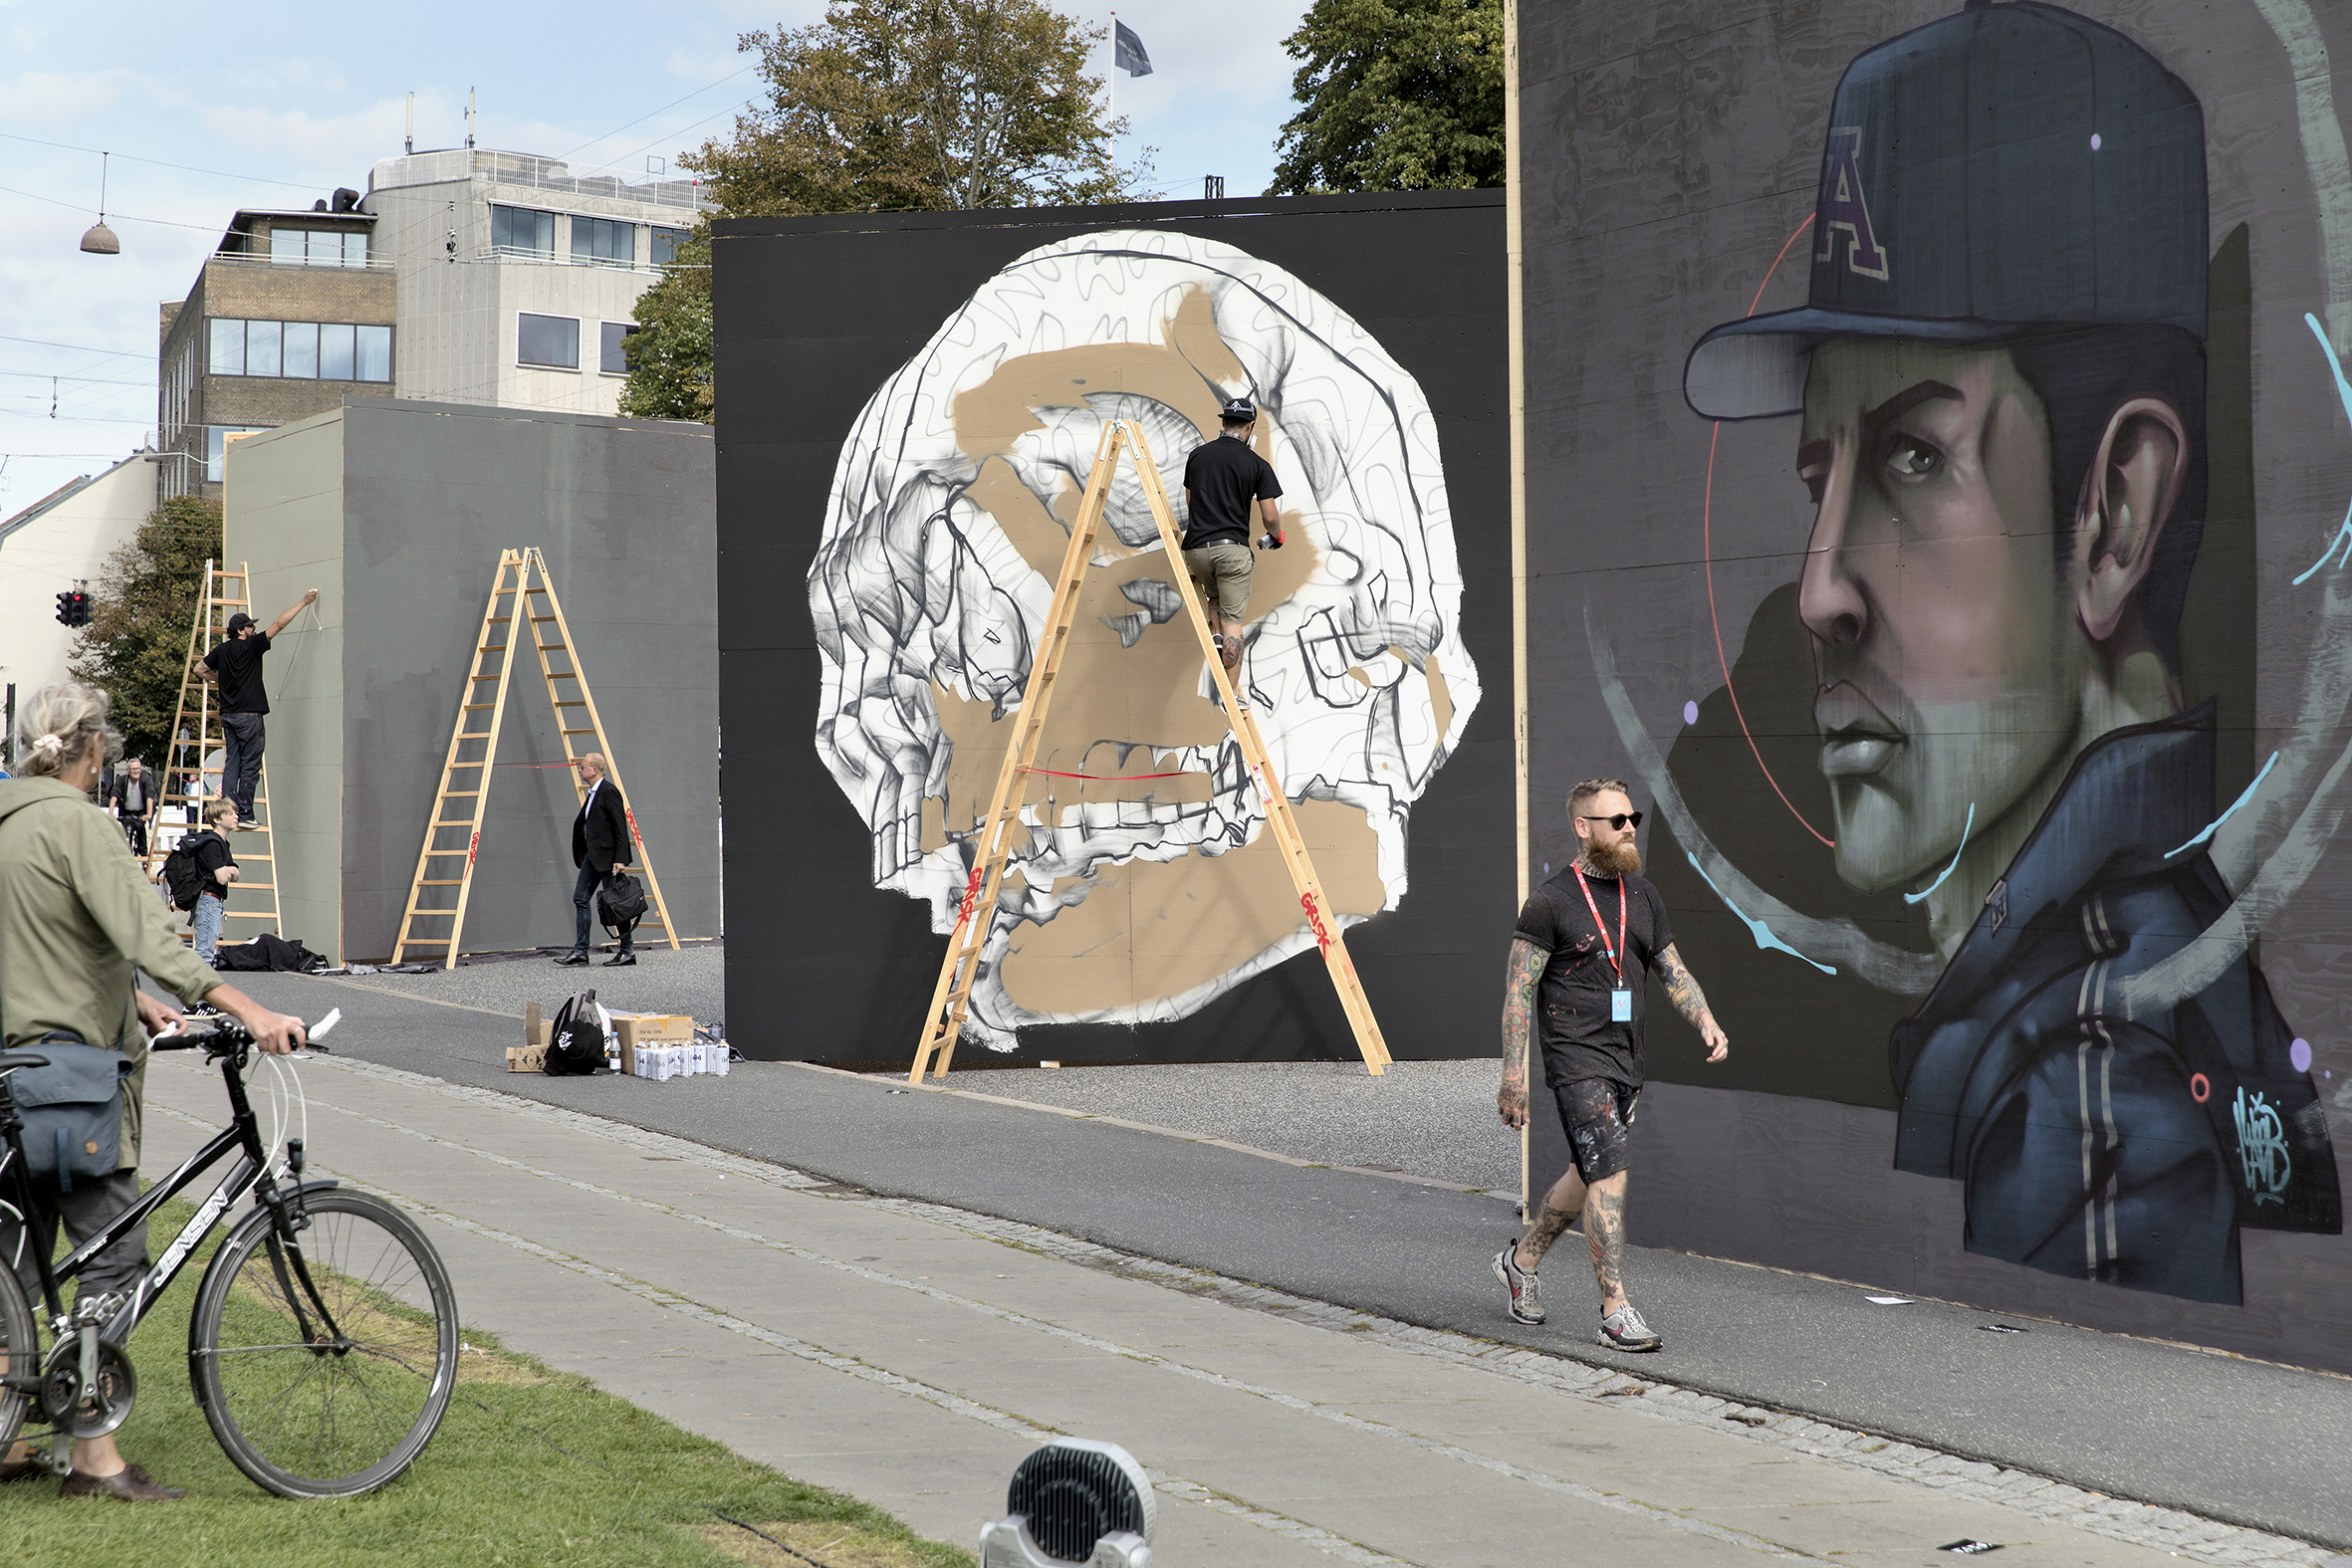 Copy of Street art-festival in Aarhus